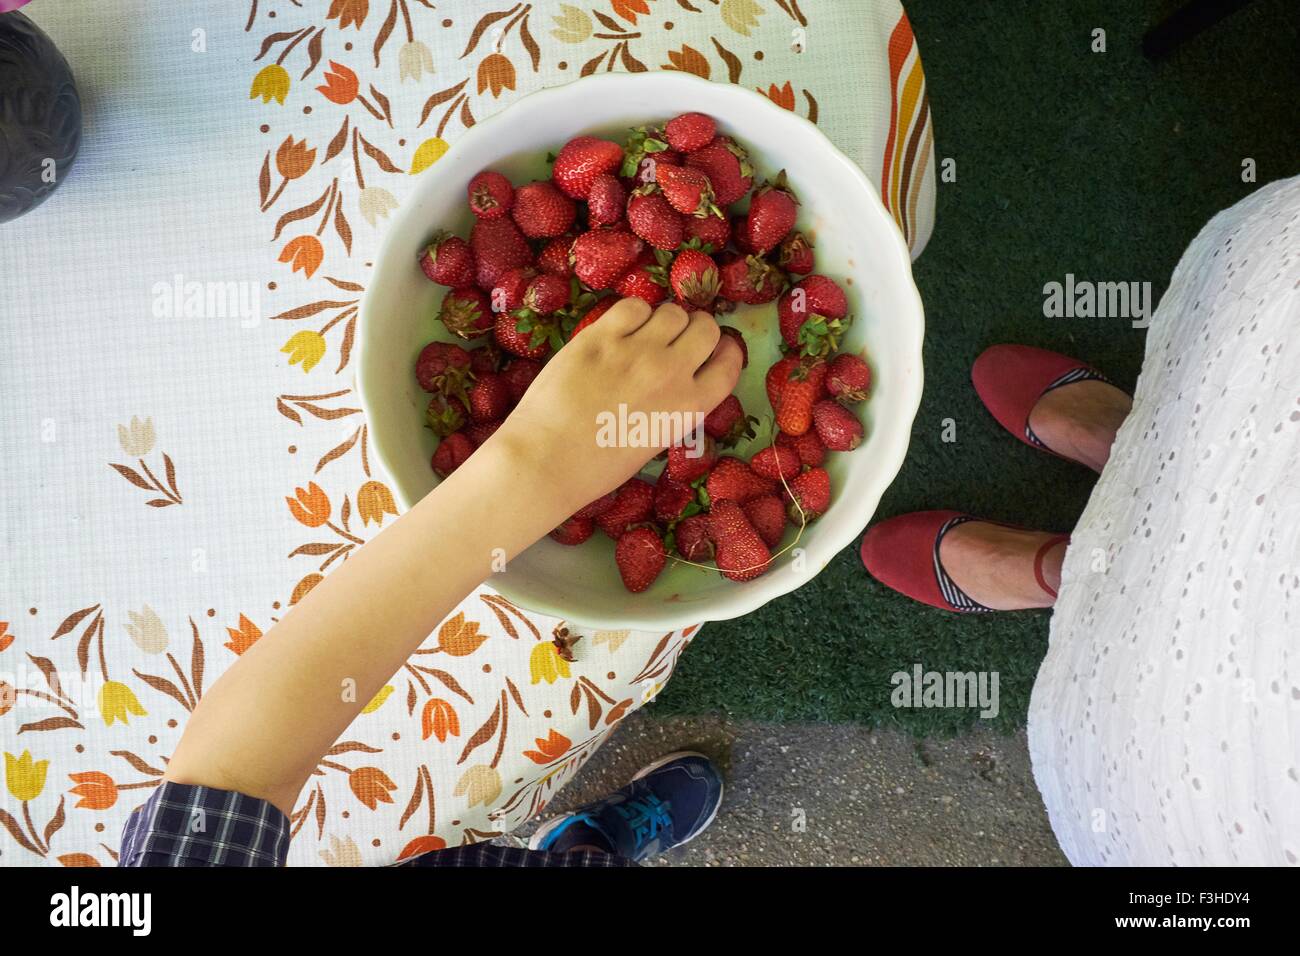 Vista aerea di ragazzi mano prelievo di fragole fresche dalla vaschetta Foto Stock